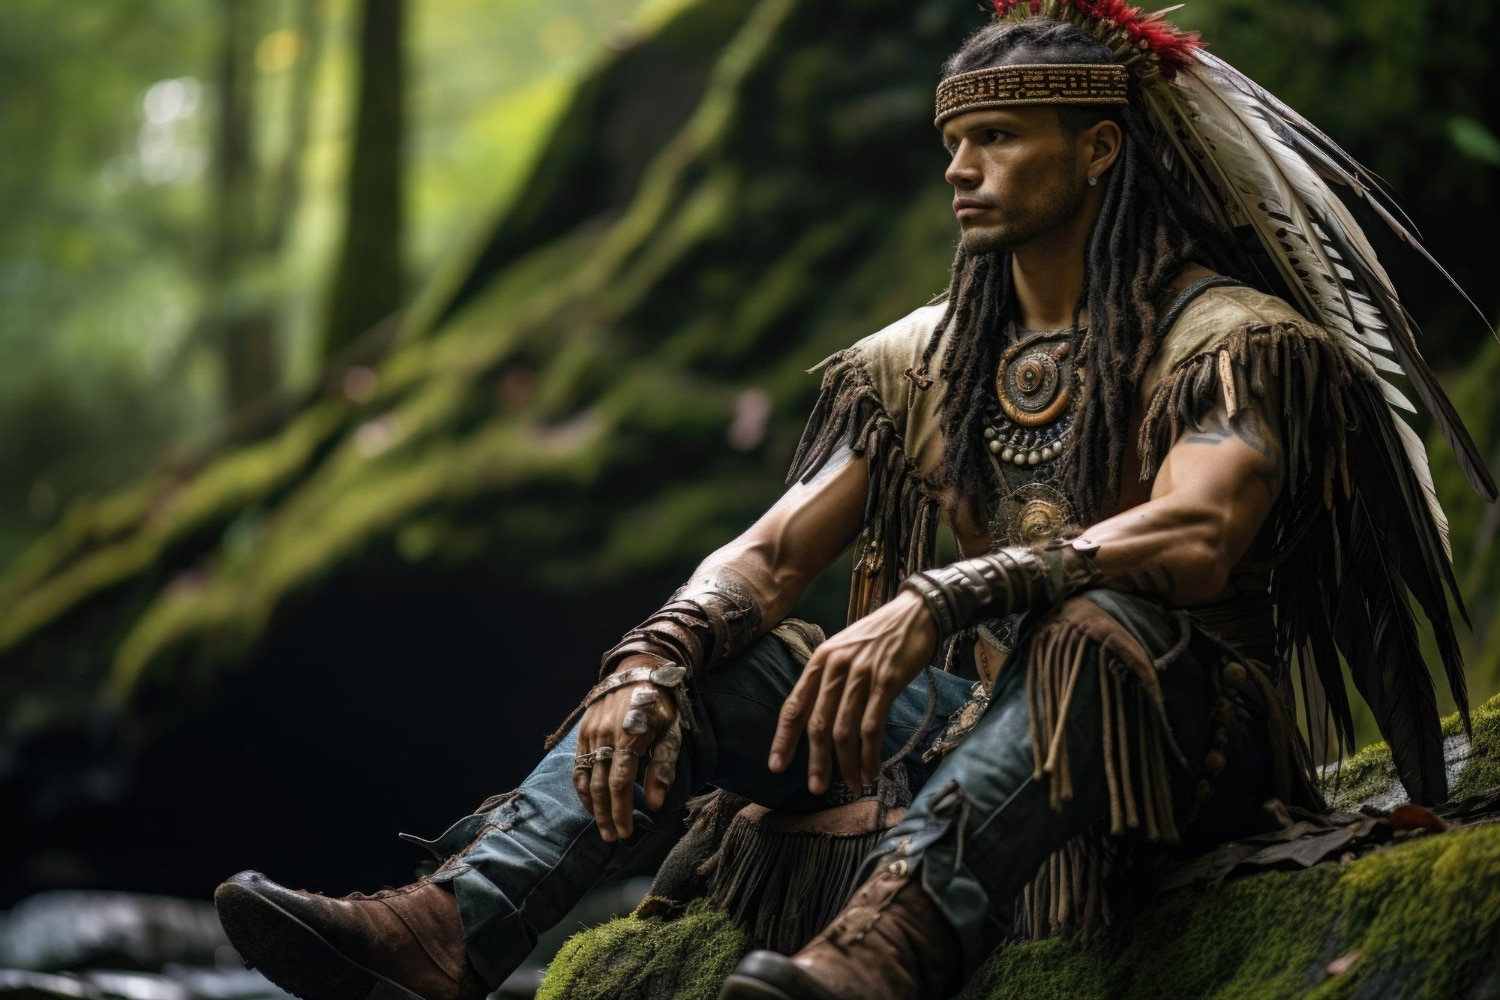 Desvelando el Secreto: Los Rituales de Iniciación de los Valientes Guerreros Maoríes